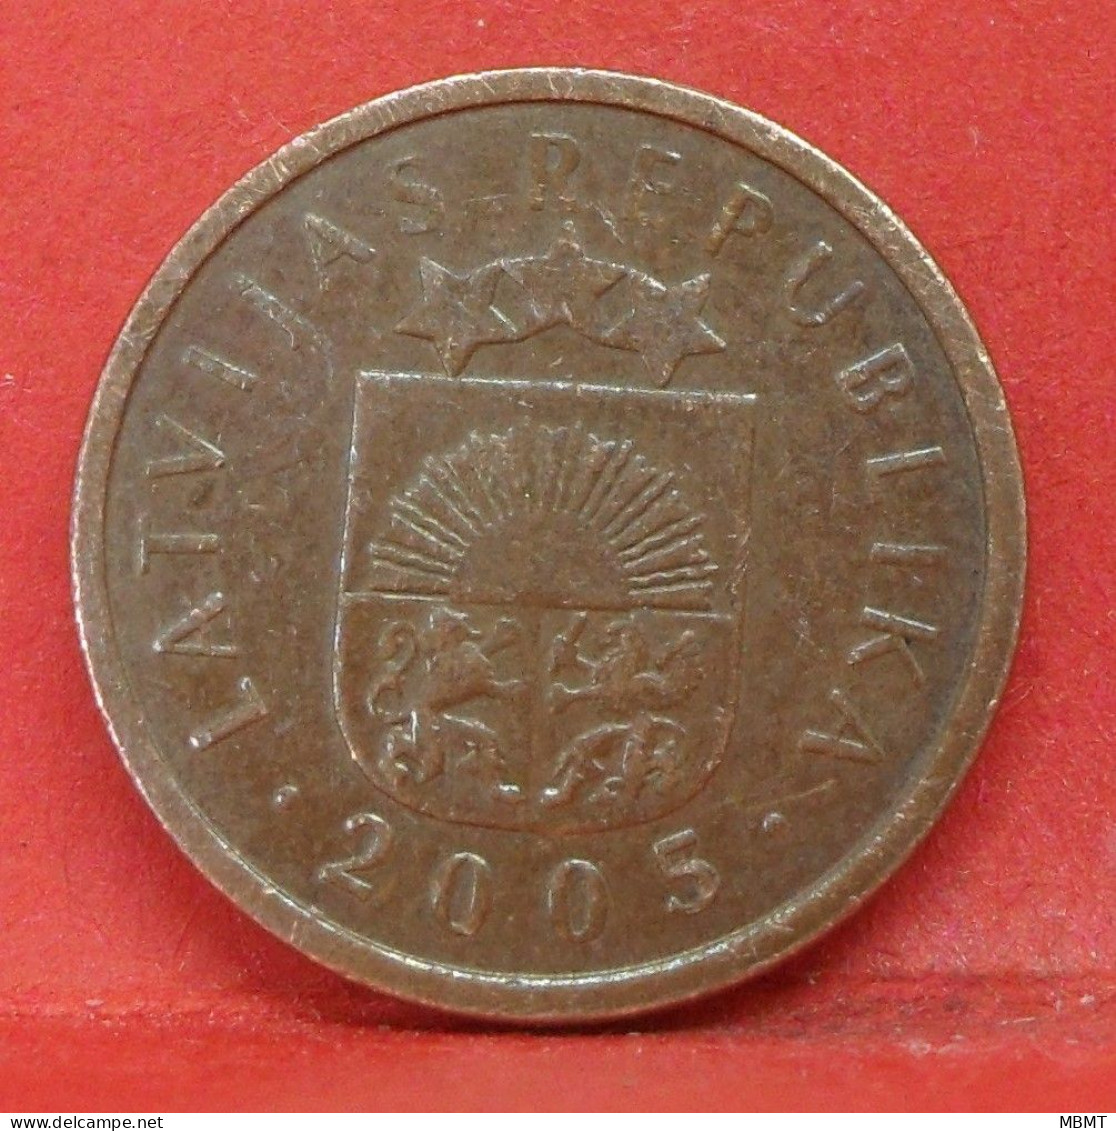 1 Santims 2005 - TTB - Pièce De Monnaie Lettonie - Article N°3632 - Latvia